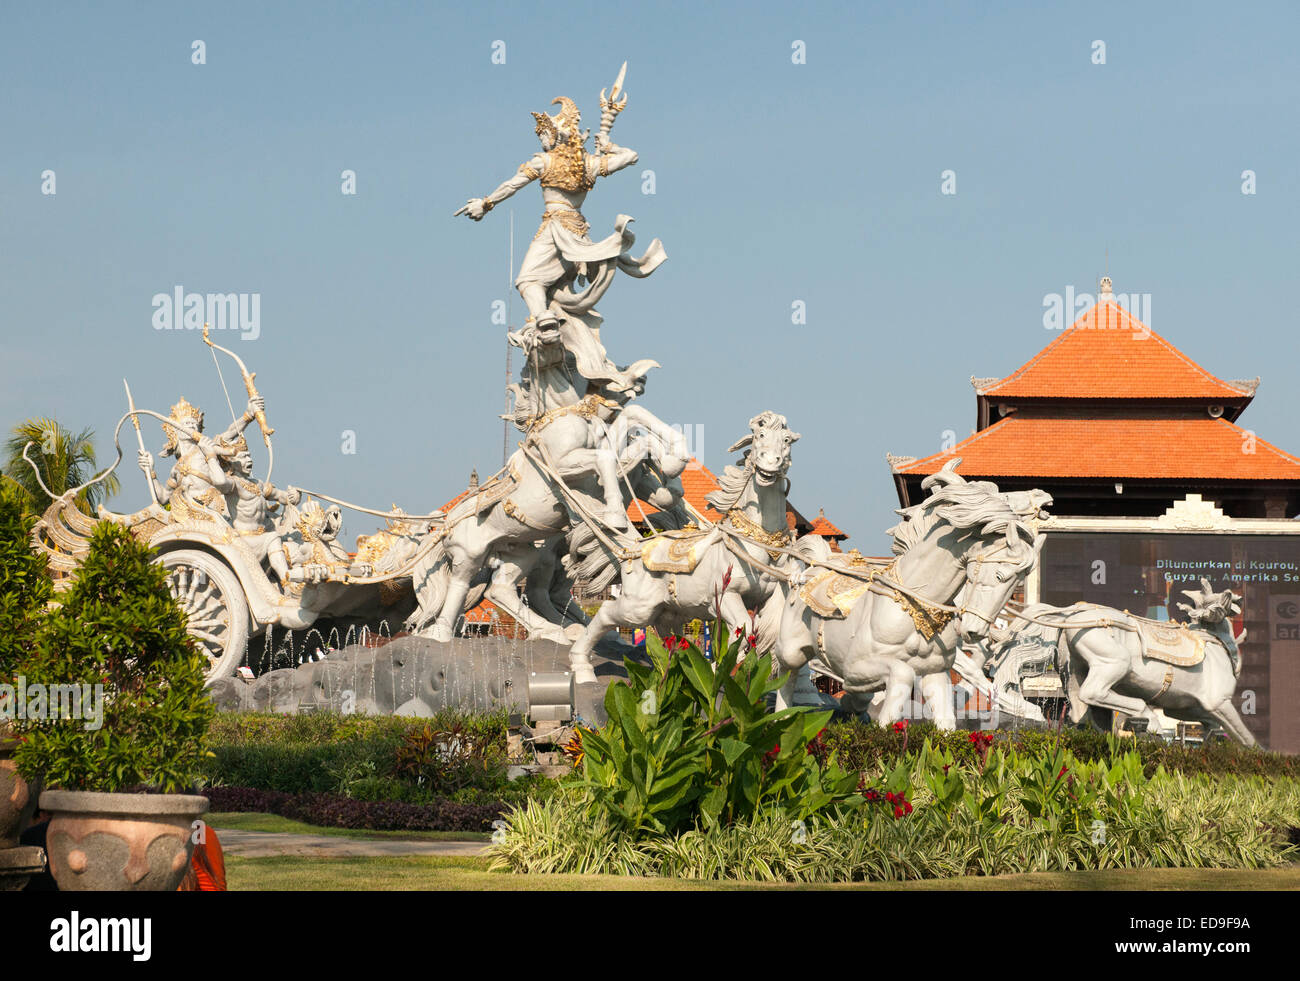 Der fliegende Ritter Skulptur am Eingang zum Flughafen Bali in Indonesien. Stockfoto